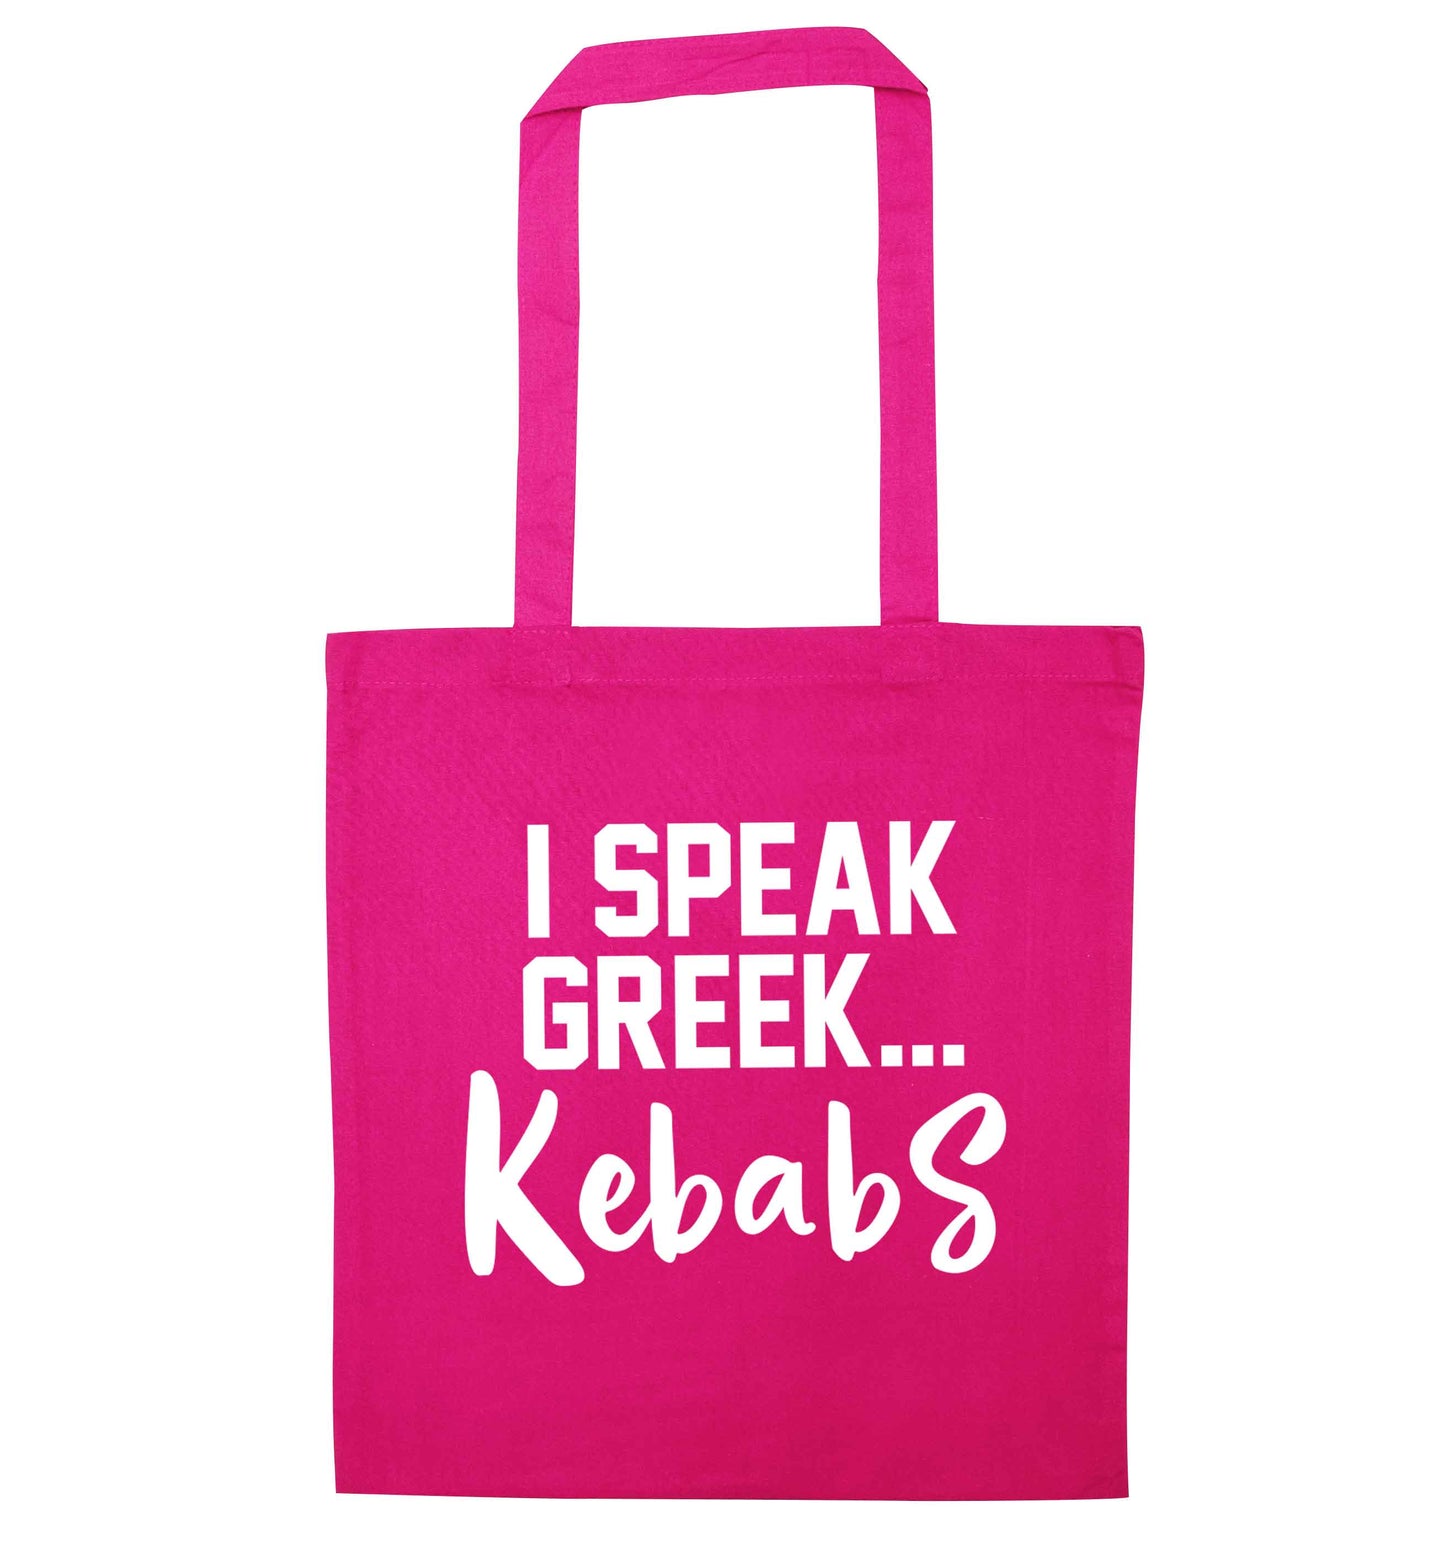 I speak Greek...kebabs pink tote bag